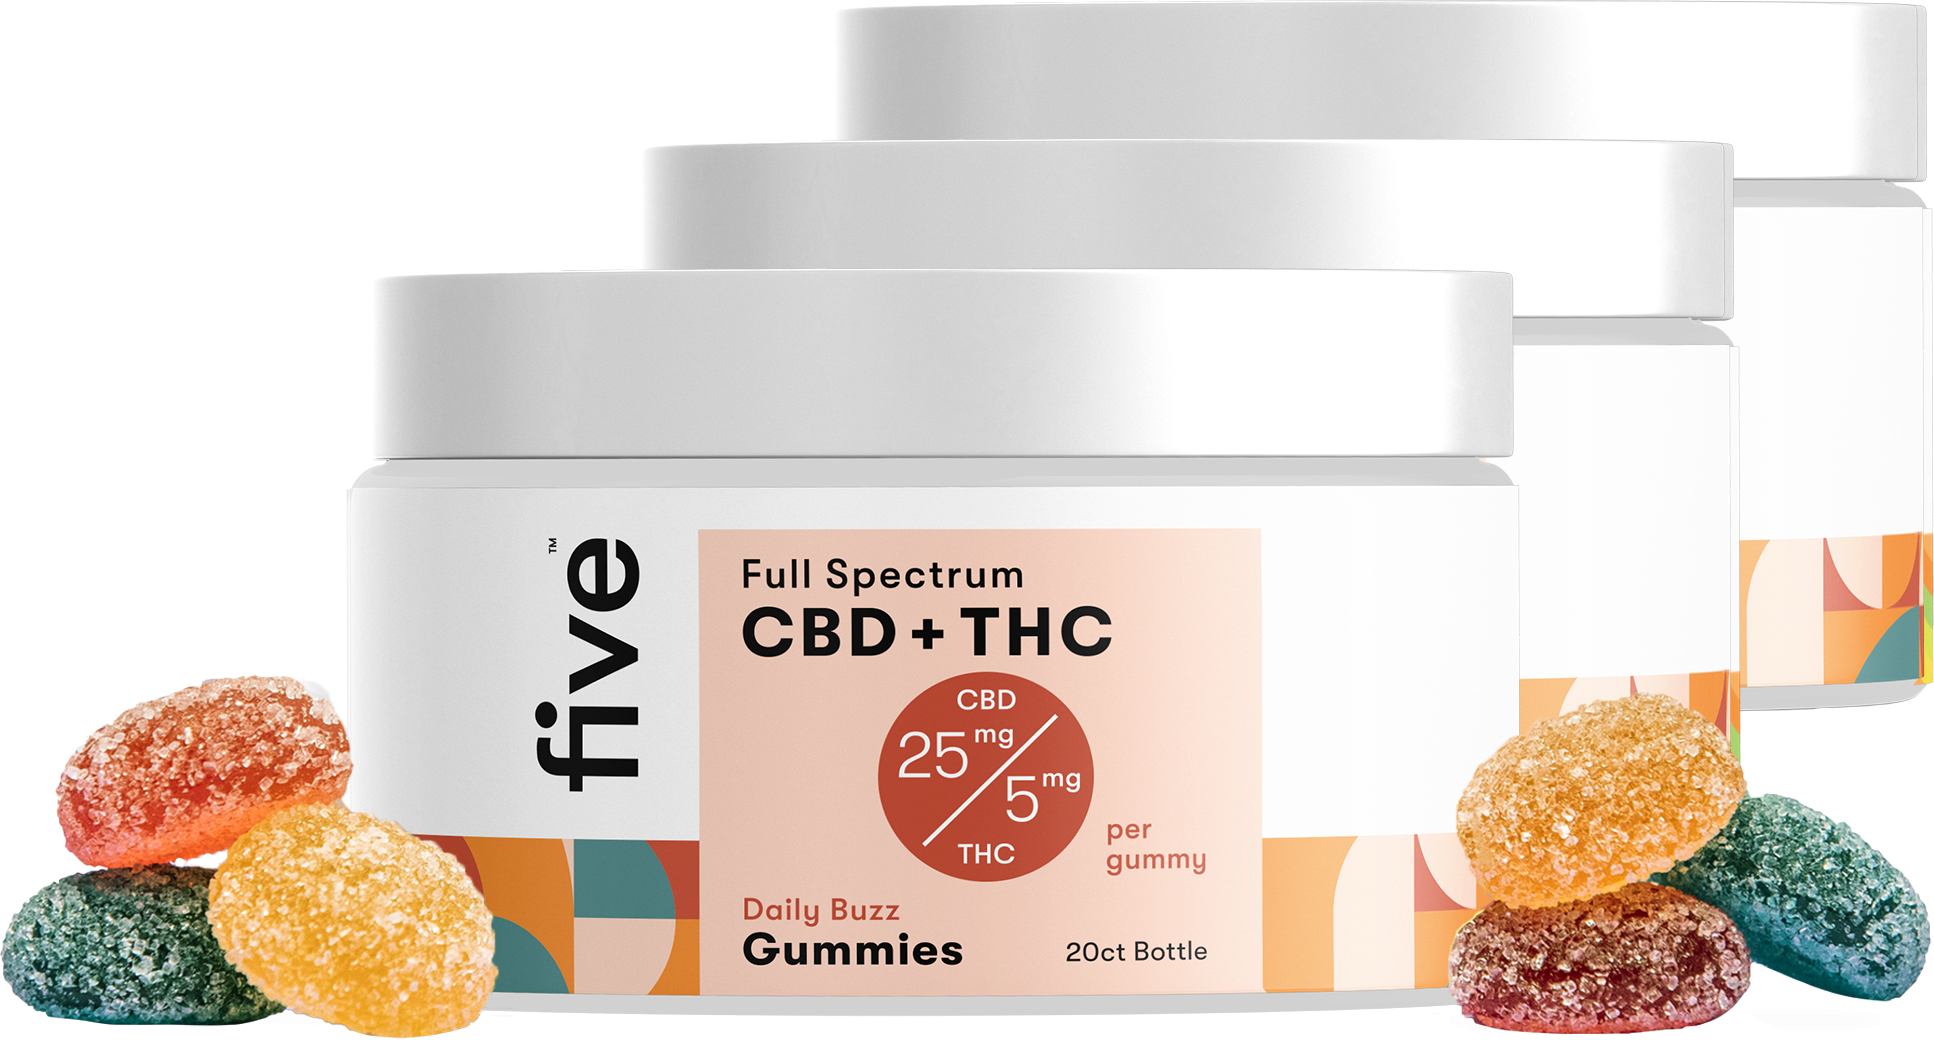 Full Spectrum CBD + THC Gummies